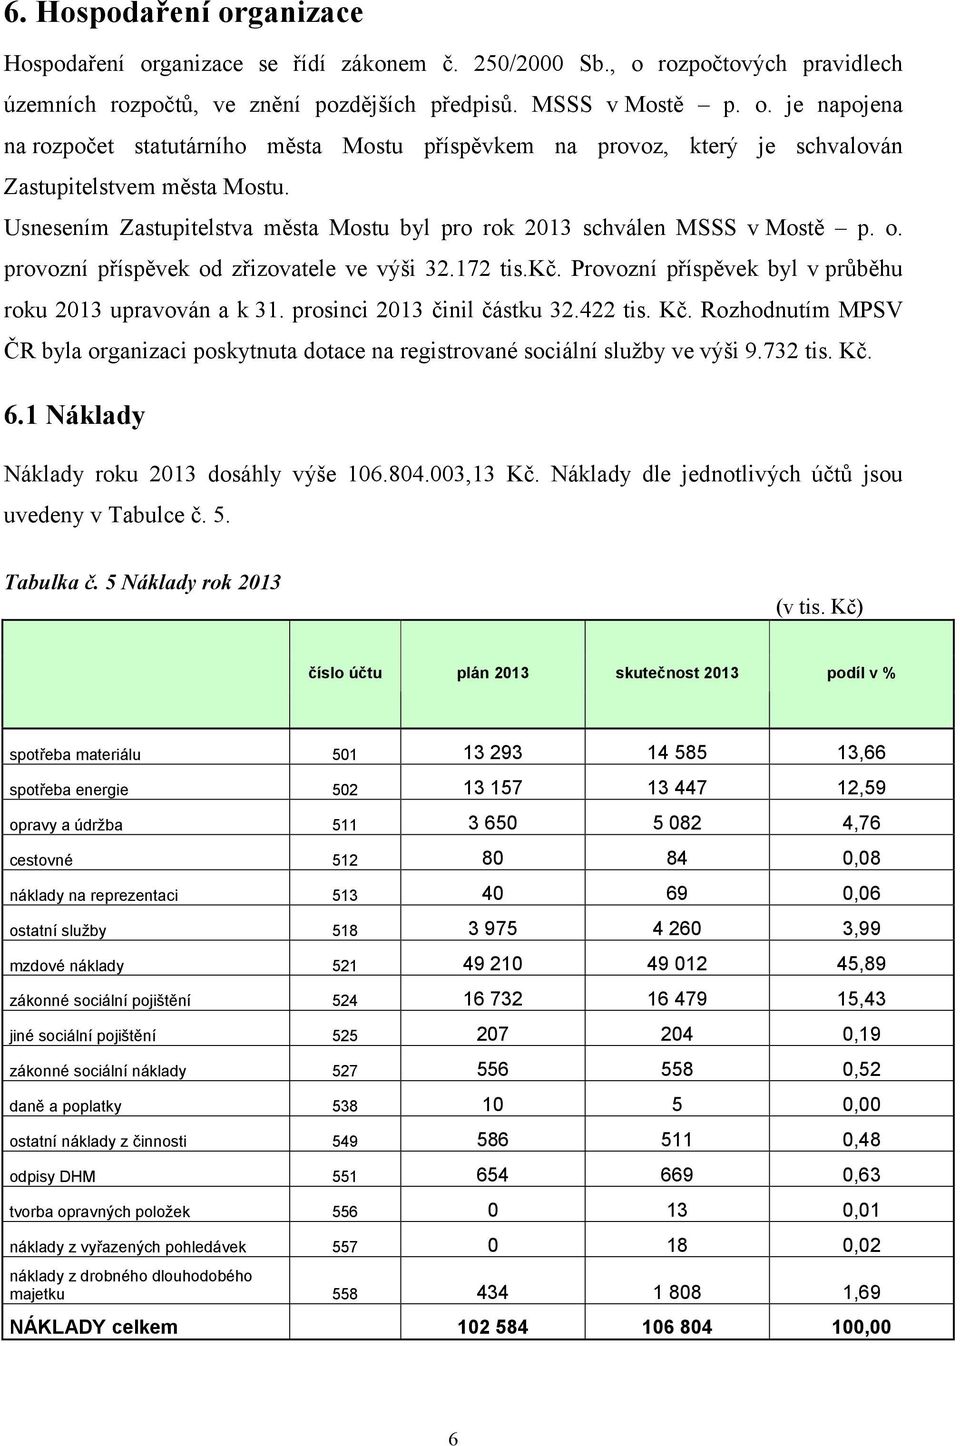 prosinci 2013 činil částku 32.422 tis. Kč. Rozhodnutím MPSV ČR byla organizaci poskytnuta dotace na registrované sociální služby ve výši 9.732 tis. Kč. 6.1 Náklady Náklady roku 2013 dosáhly výše 106.